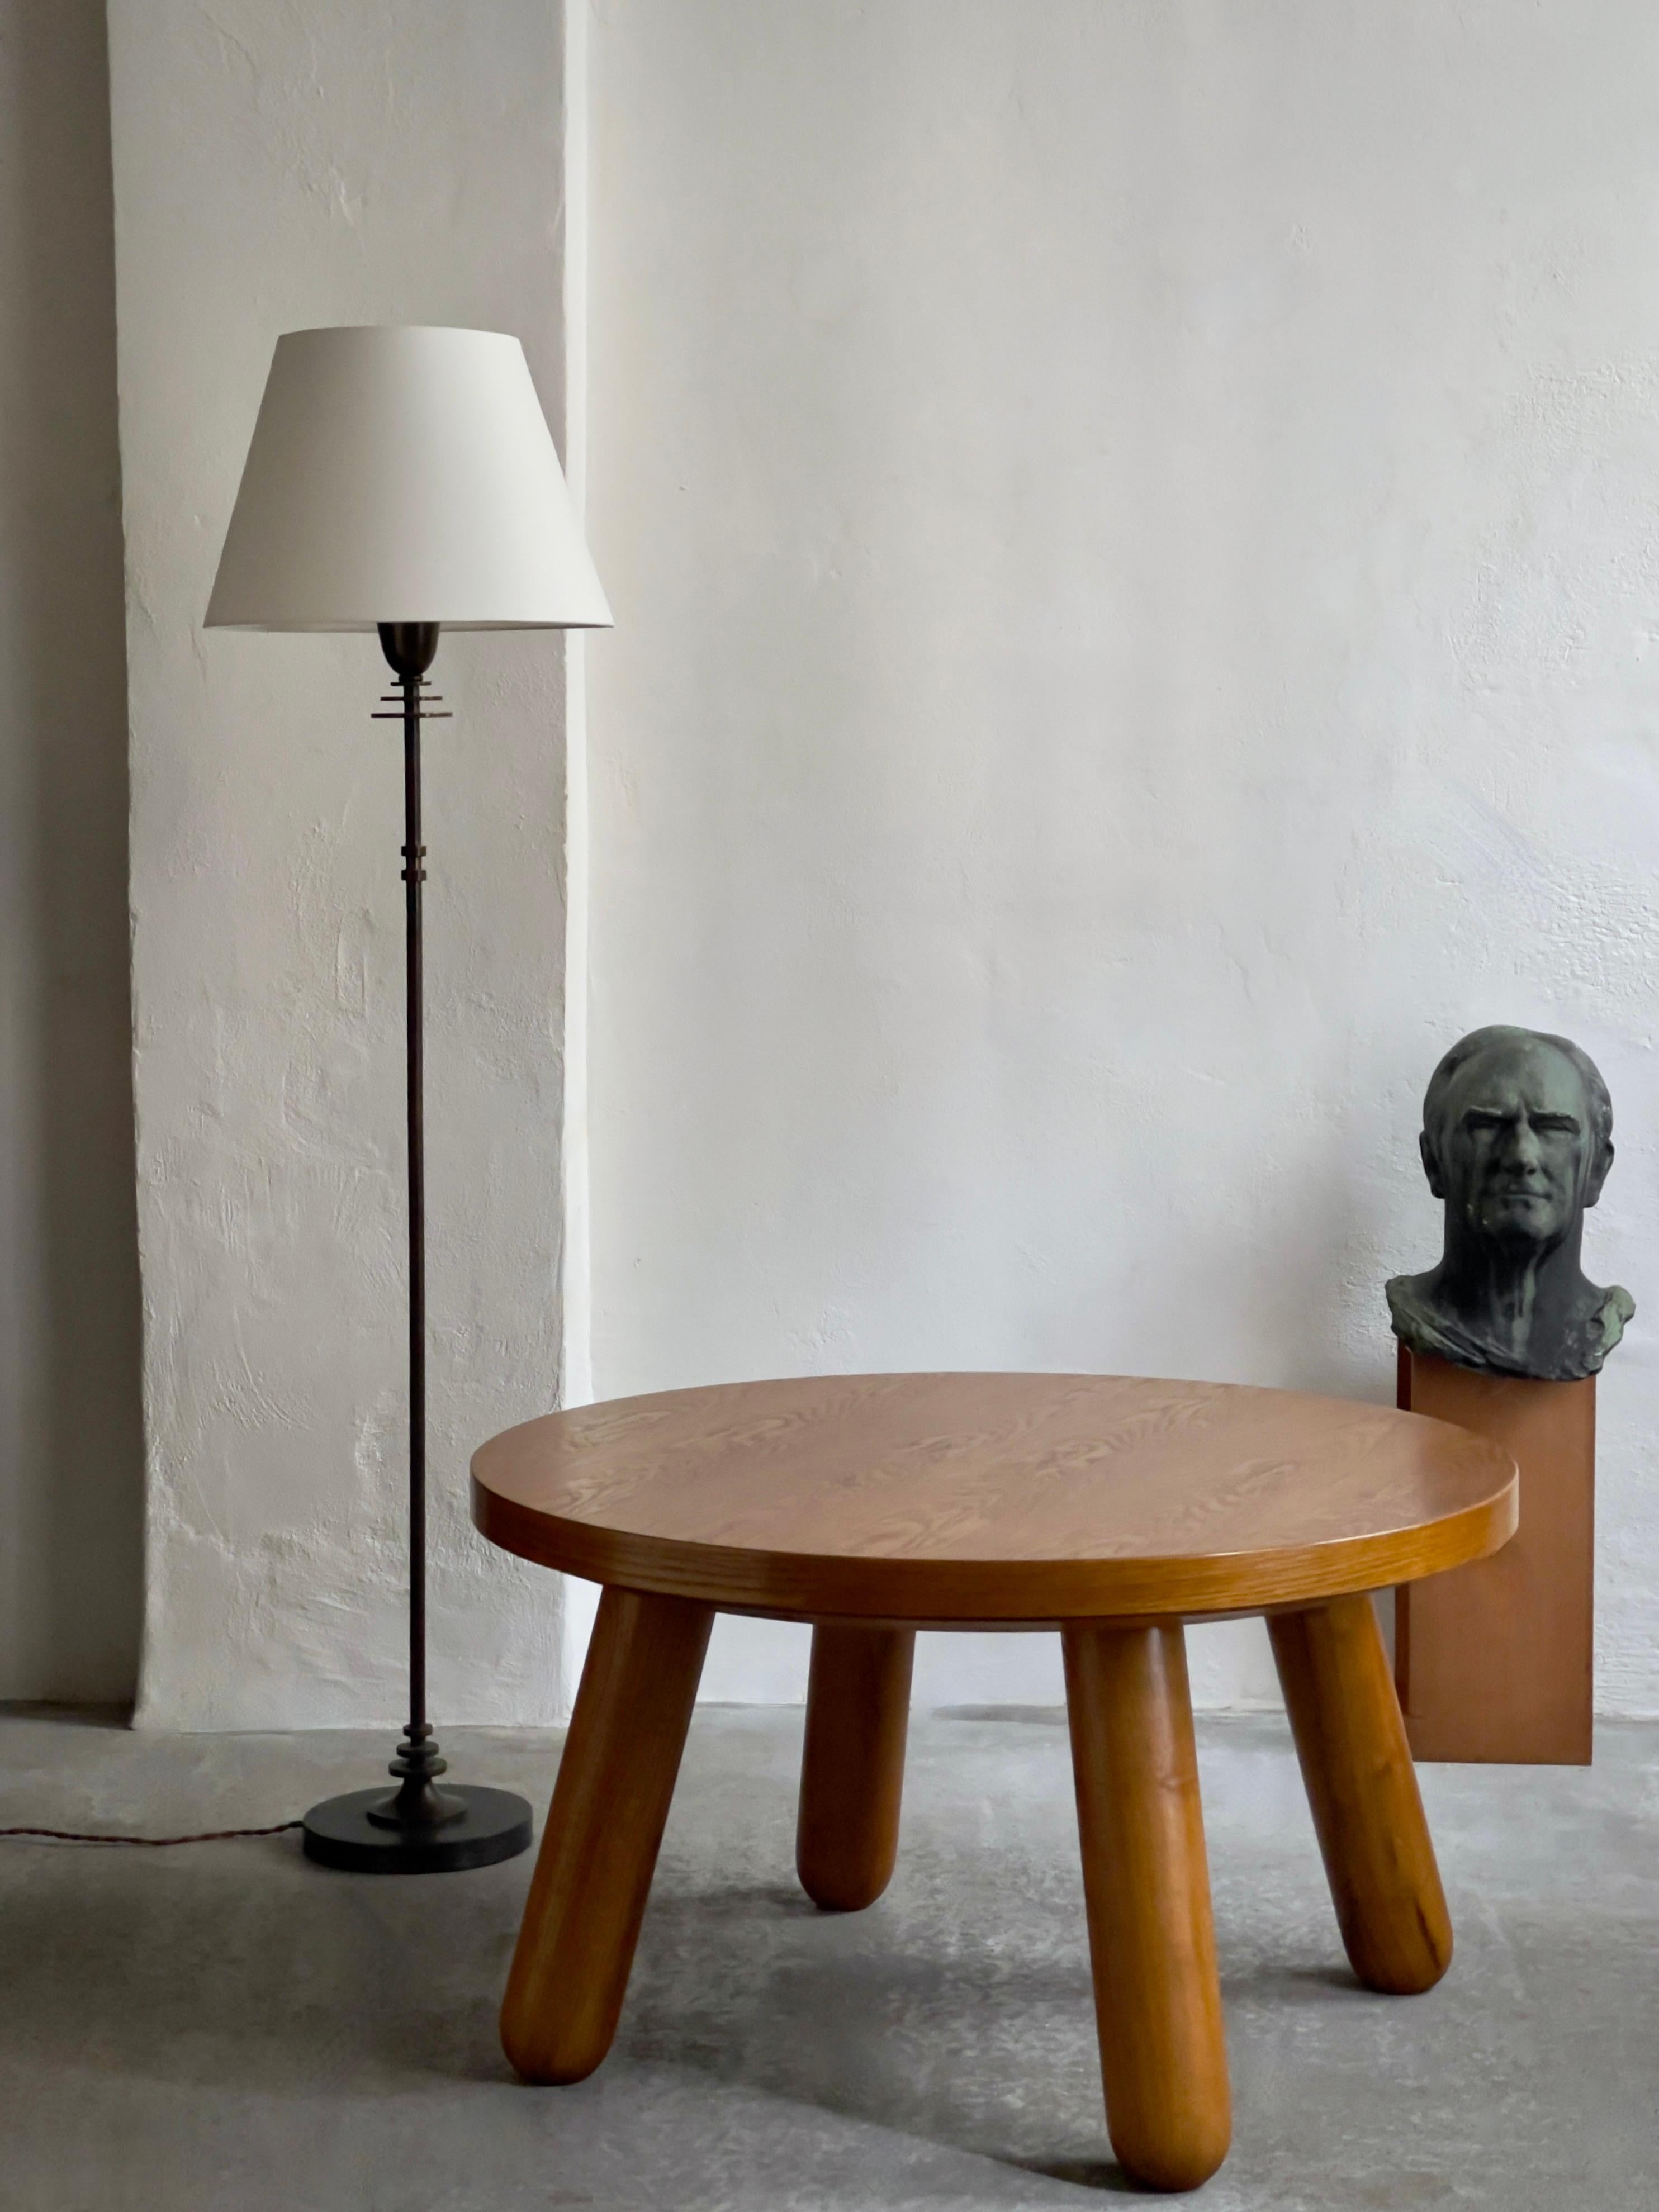 Dieser exquisite runde Couchtisch entstammt der dänischen Designbewegung der Jahrhundertmitte und zeigt die außergewöhnliche Handwerkskunst, für die dänische Möbelhersteller bekannt sind. Dieser Couchtisch wurde in den 1940er Jahren in Kopenhagen,